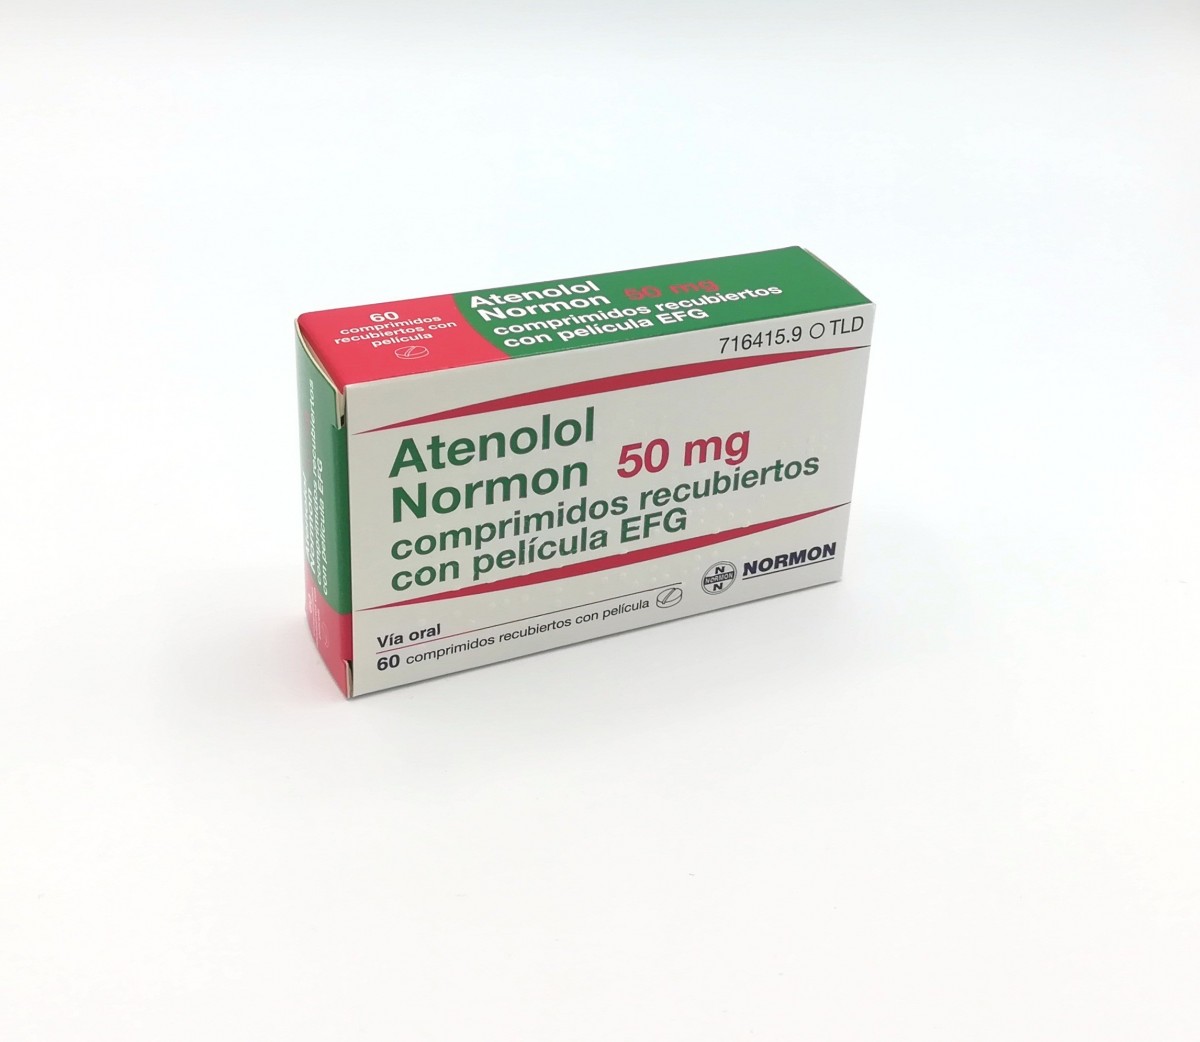 ATENOLOL NORMON 50 mg COMPRIMIDOS RECUBIERTOS EFG , 500 comprimidos fotografía del envase.